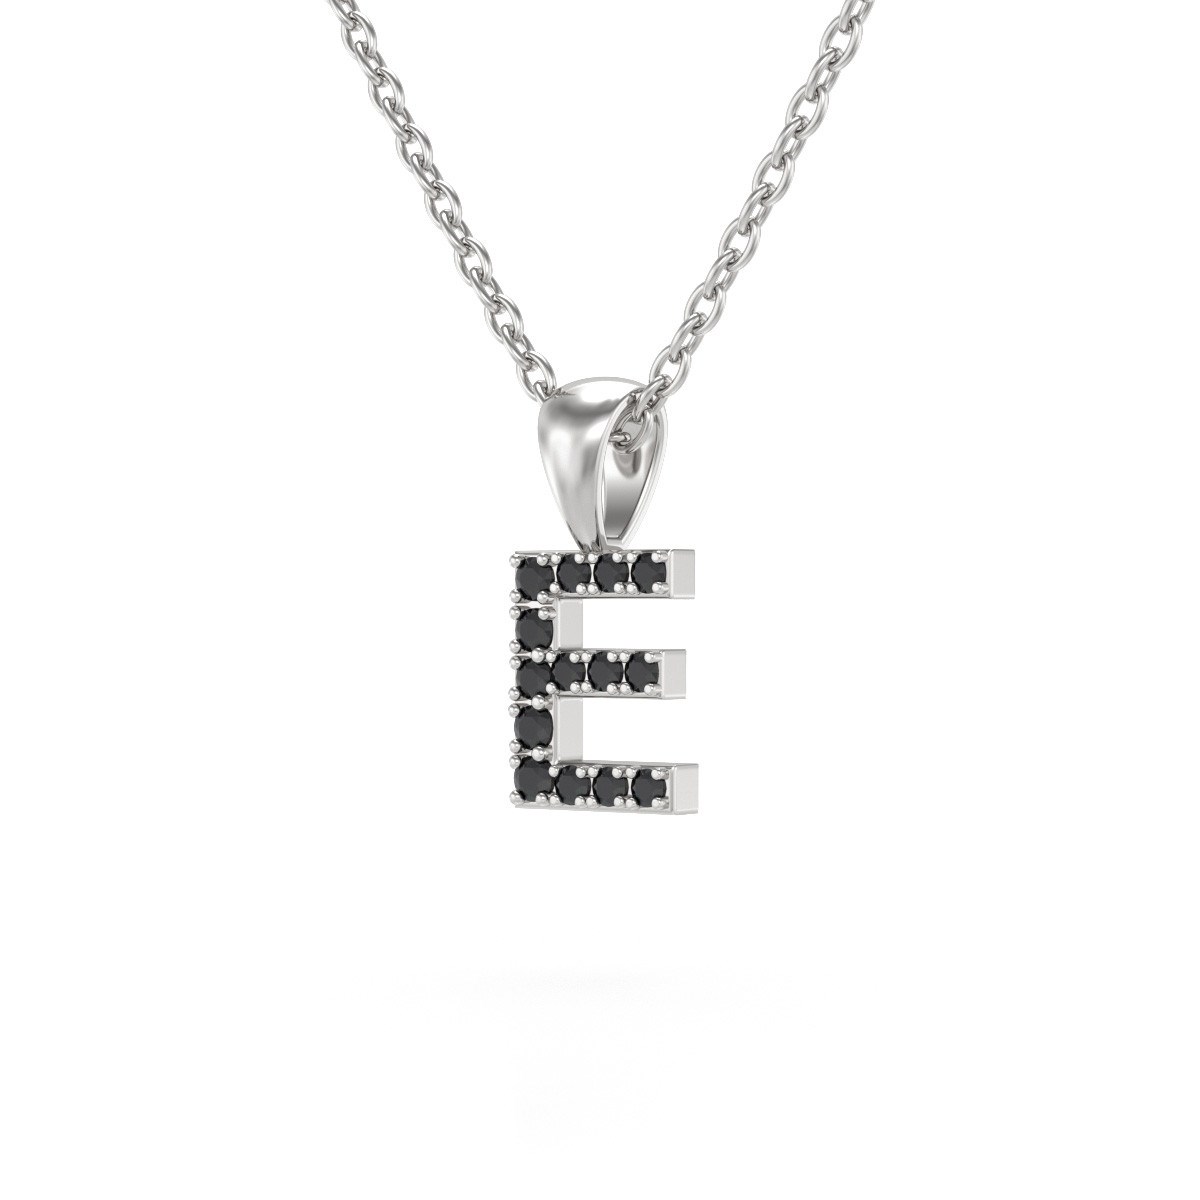 Collier Pendentif ADEN Lettre E Or 750 Blanc Diamant Noir Chaine Or 750 incluse 0.72grs - vue 3